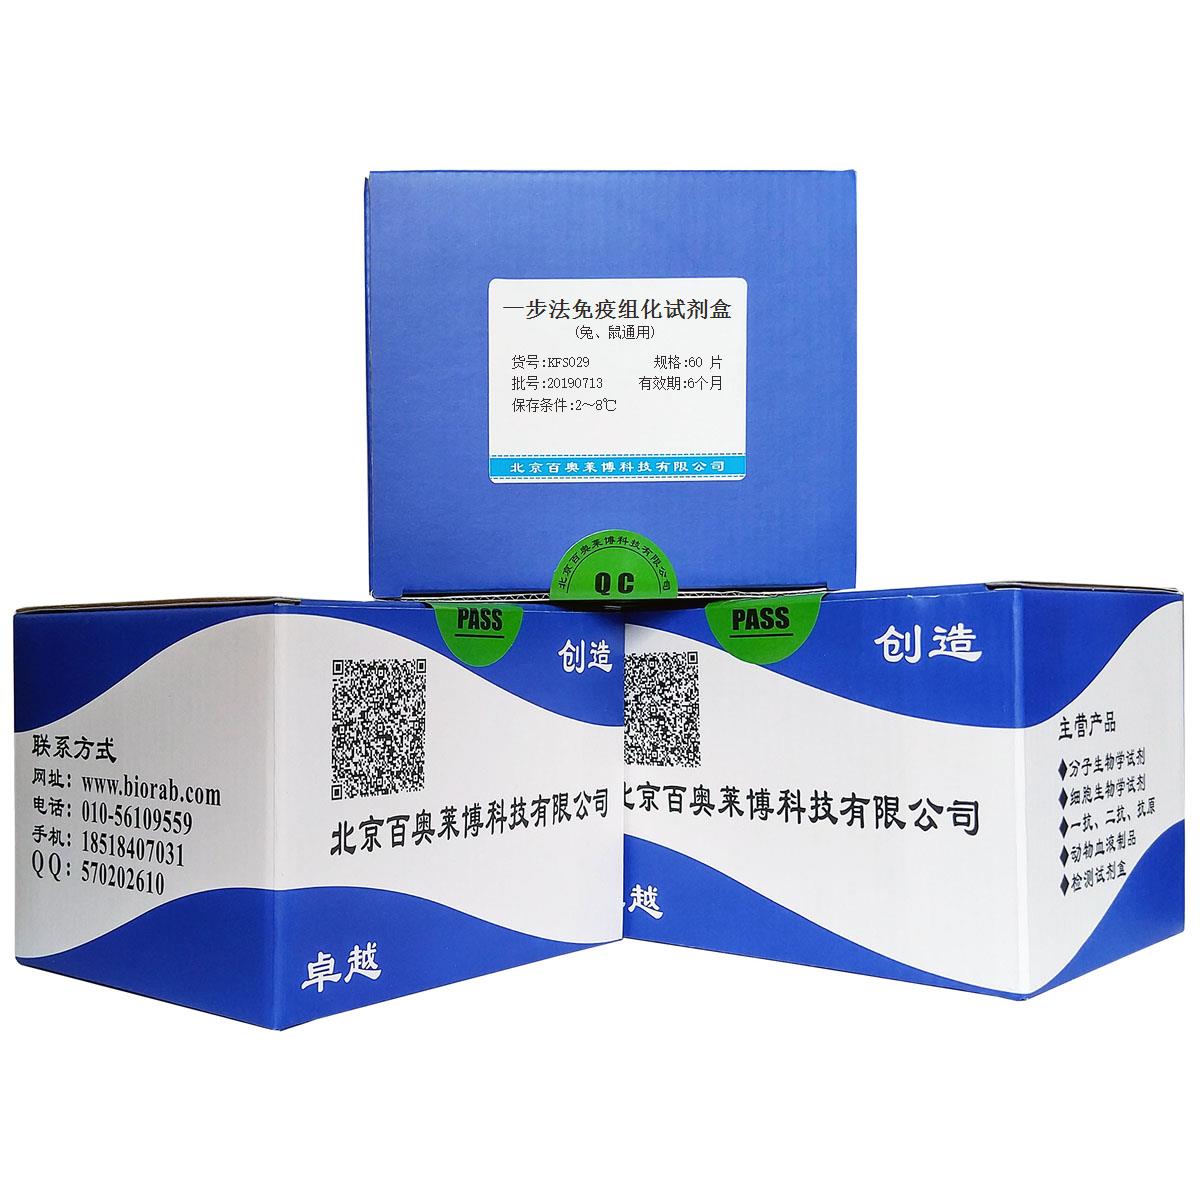 一步法免疫组化试剂盒(兔、鼠通用)北京品牌